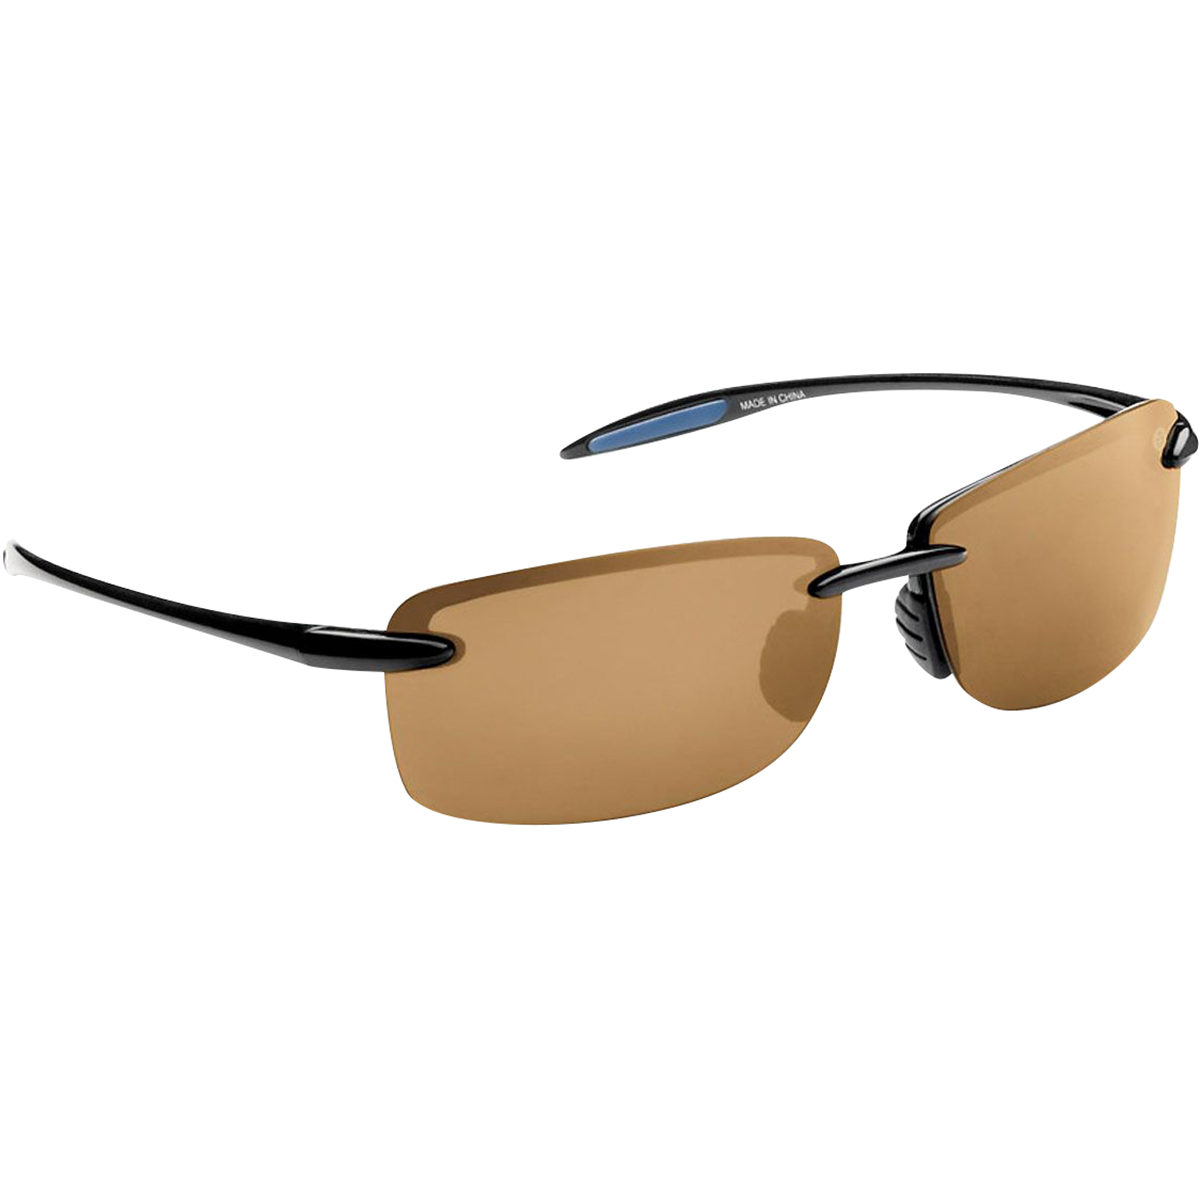 Flying Fisherman Cali Polarized Sunglasses - Black/Amber - image 1 of 1